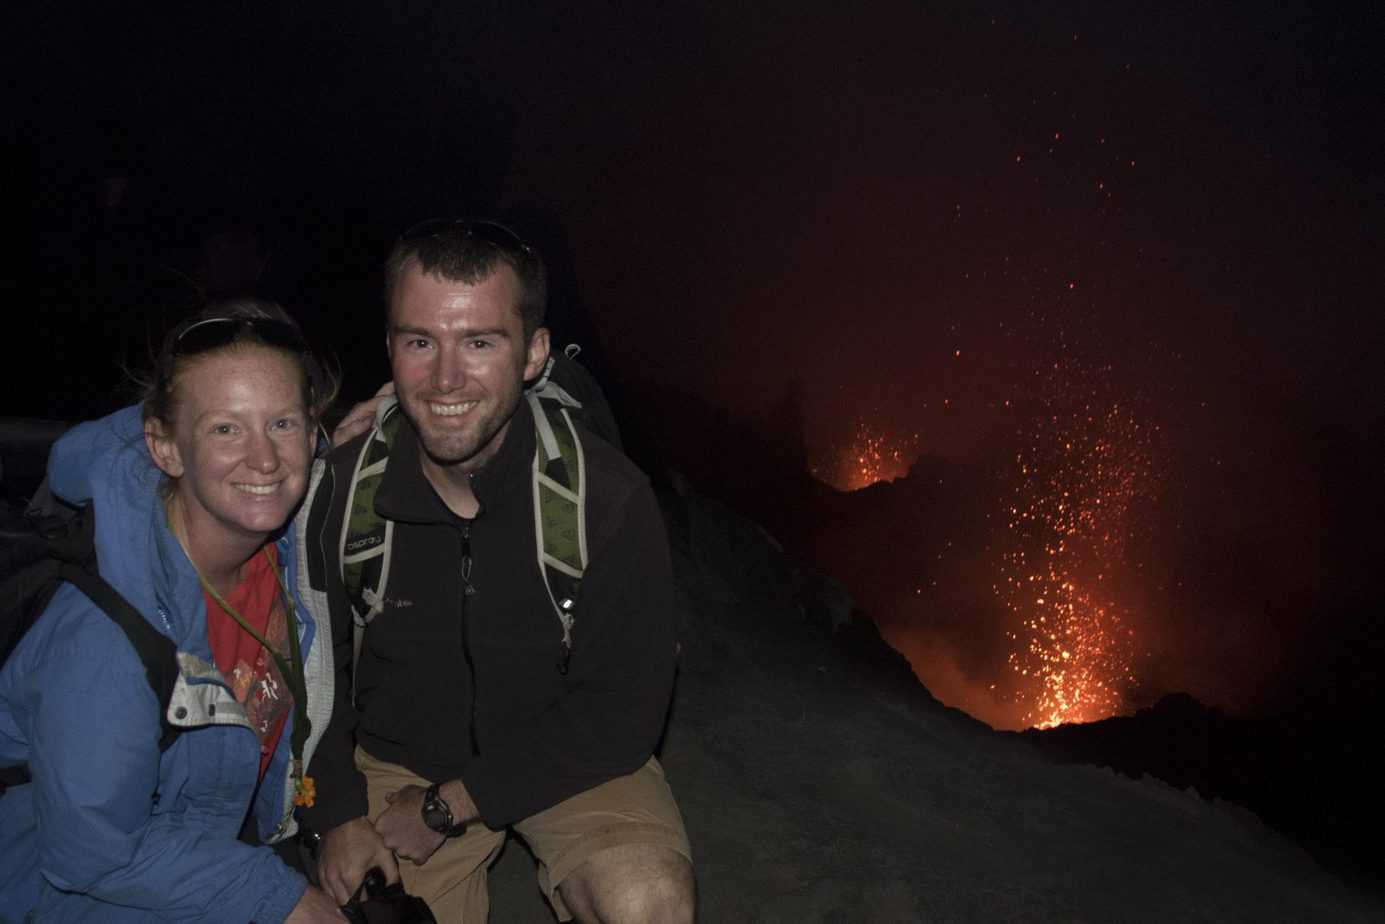 A couple smiles near an active volcano